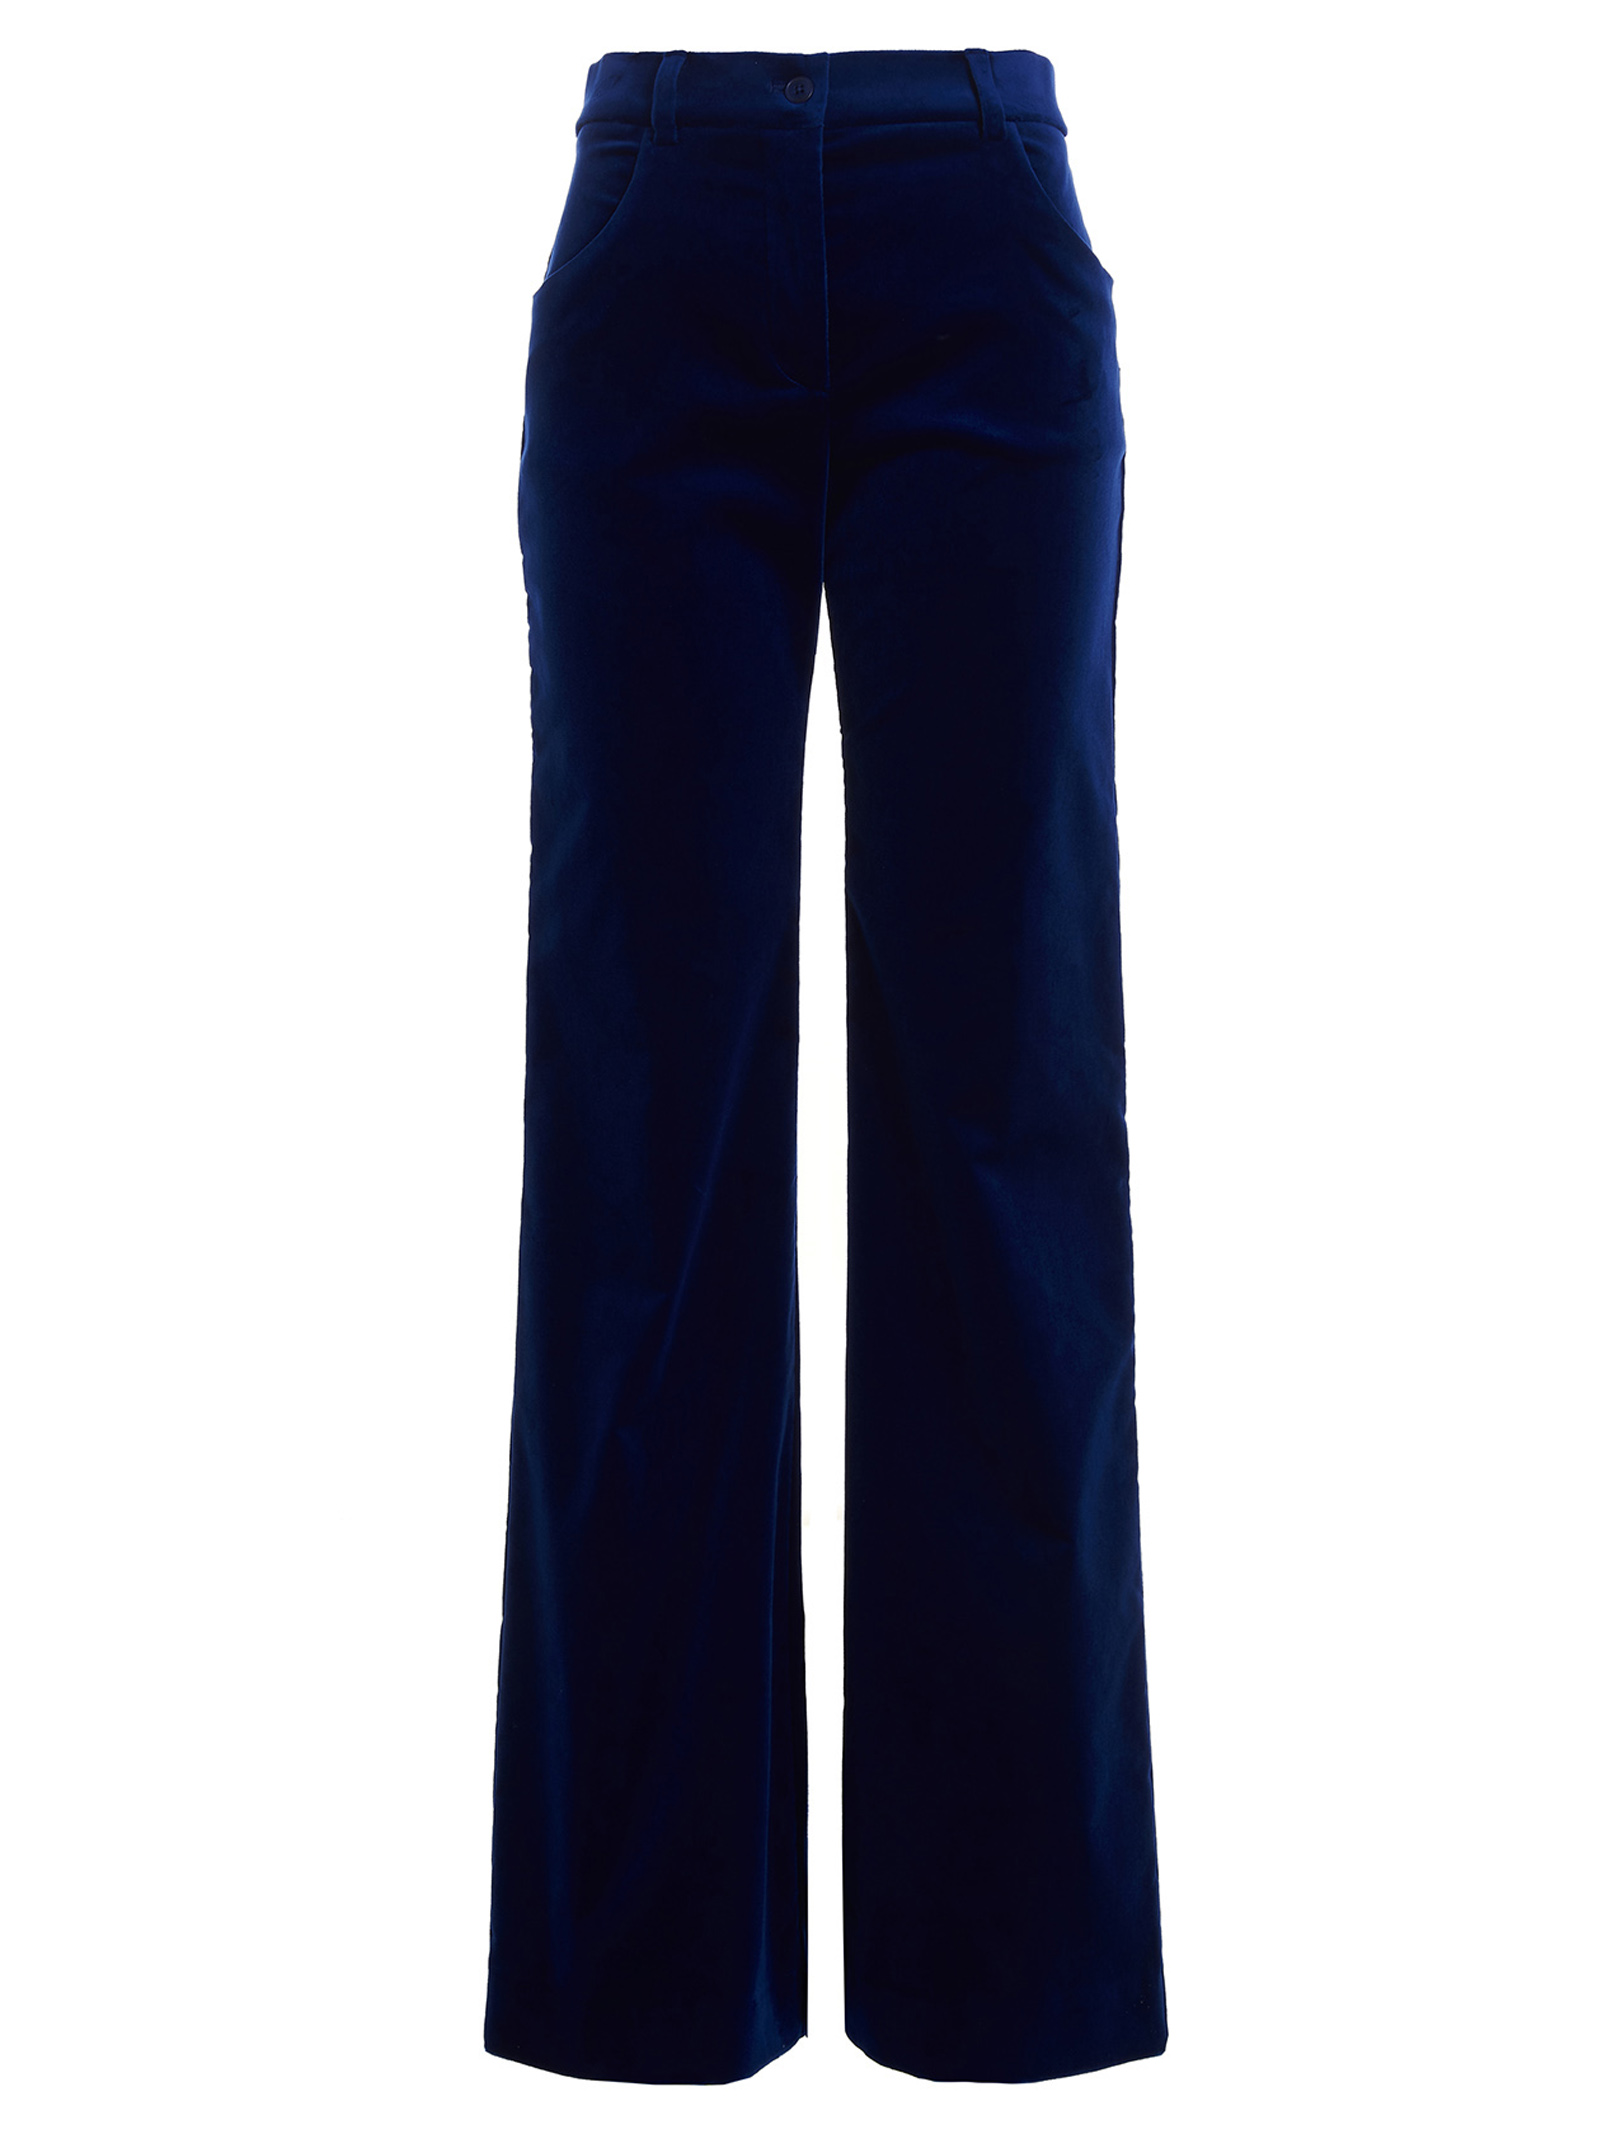 Pantalons Pour Femme - Alberta Ferretti - En Cotton Blue - Taille:  -